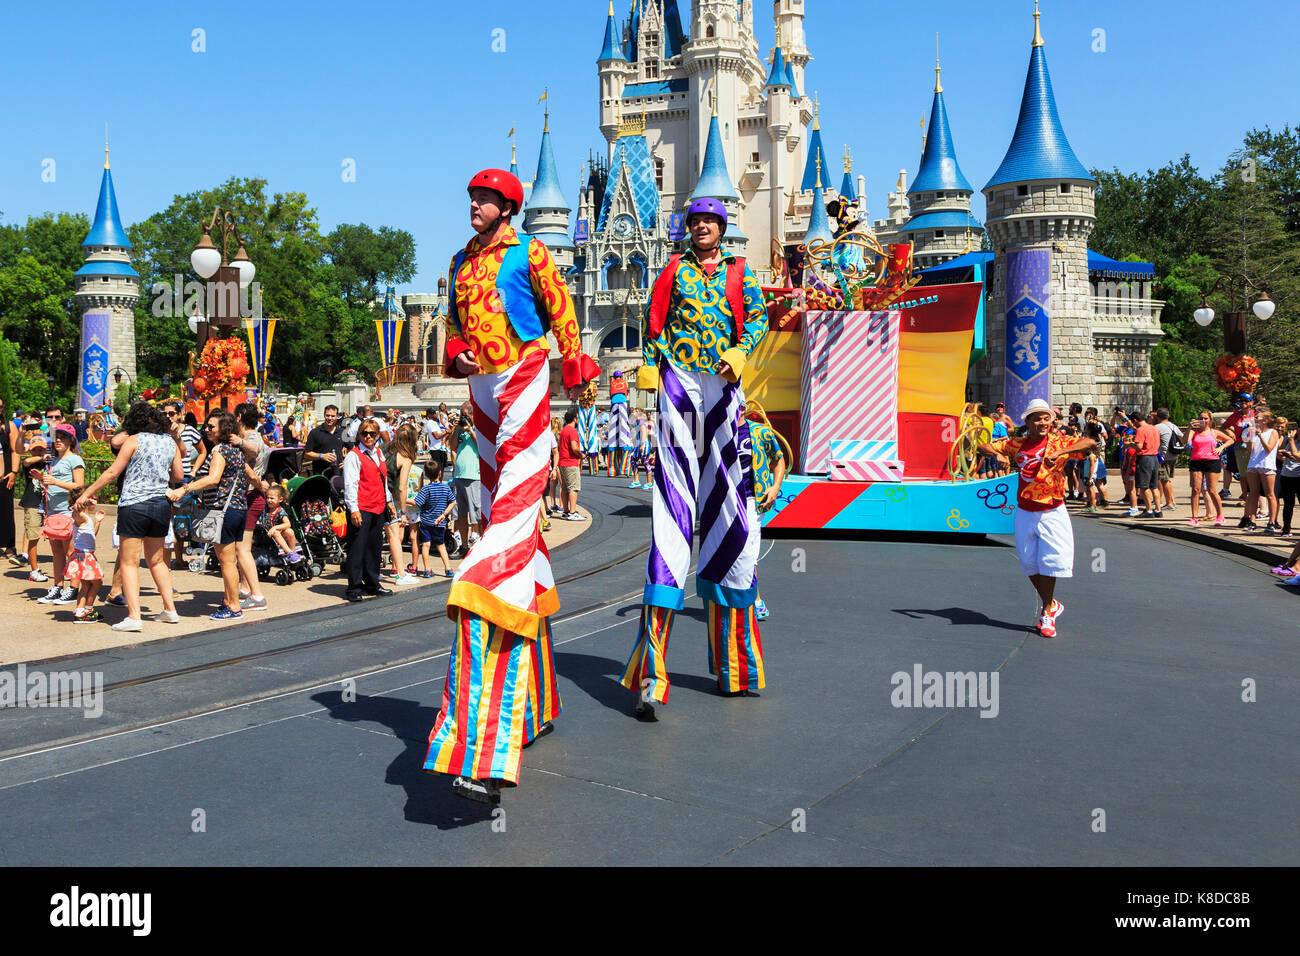 Street entertainment at Walt Disney's Magic Kingdom theme park, Orlando, Florida, USA Stock Photo